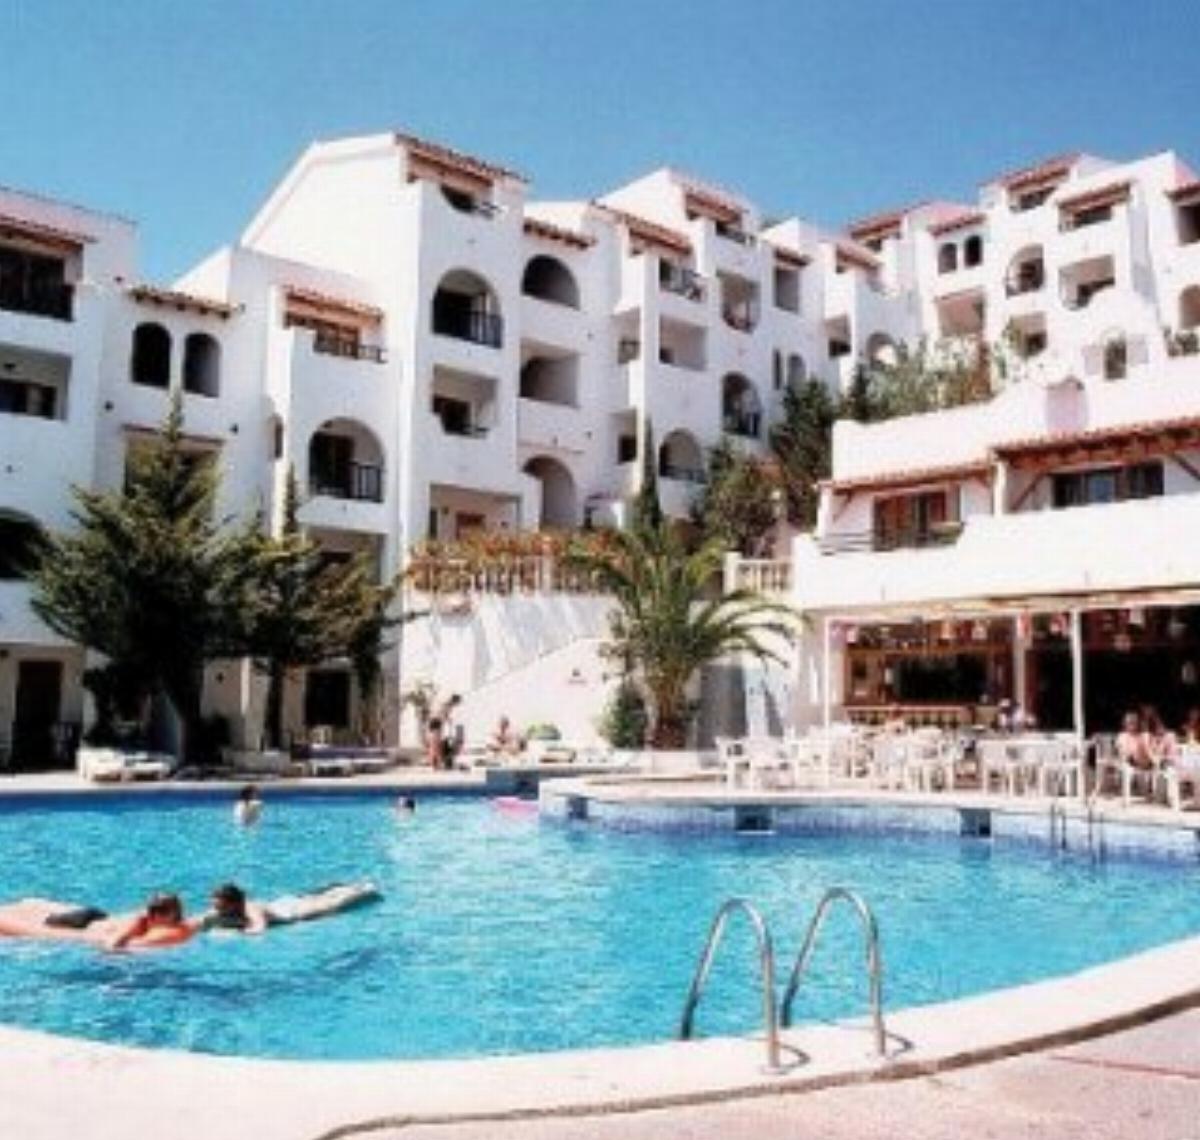 Holiday Park Hotel Majorca Spain